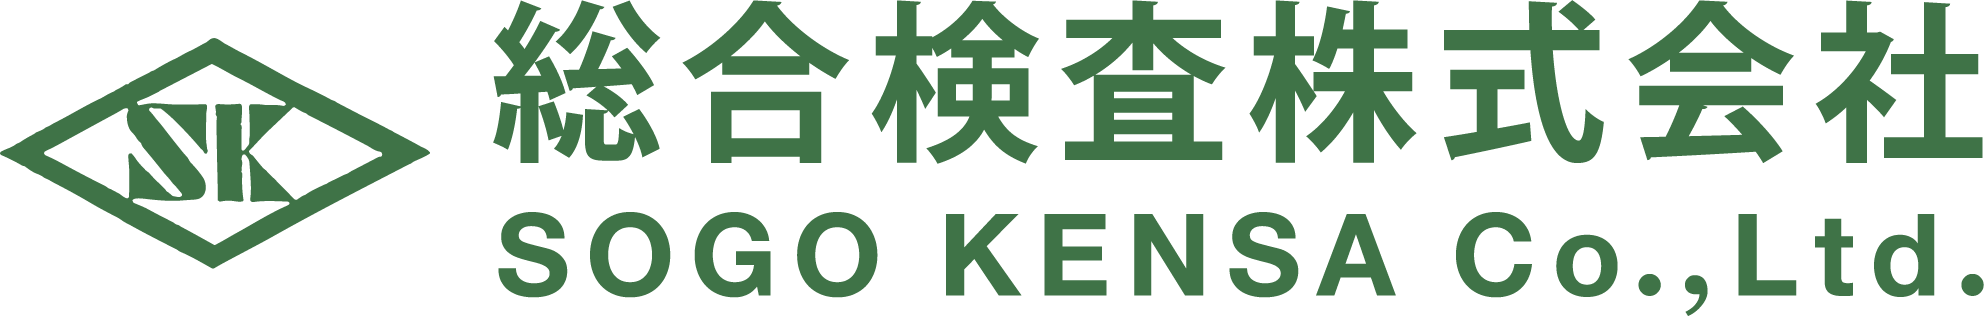 総合検査株式会社ロゴ